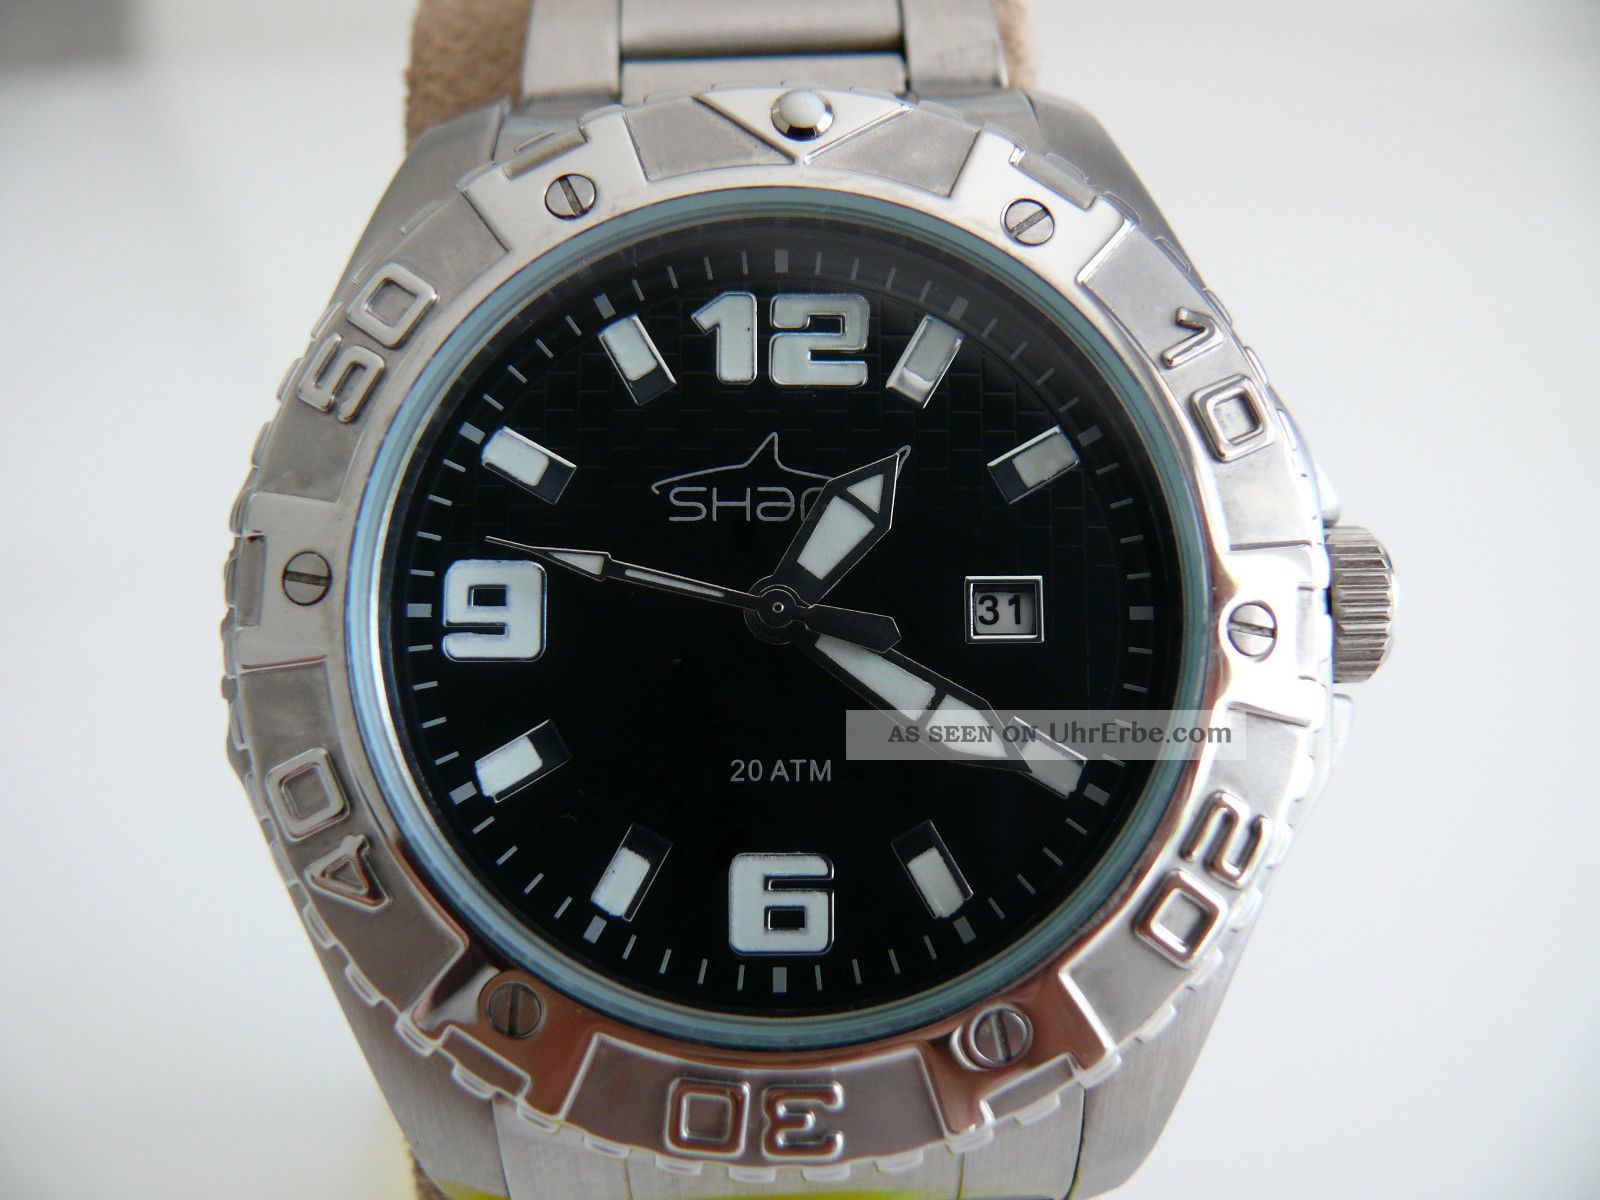 Shark 2 - Tv2411 Herren Taucher Flieger Scuba Armbanduhr 20atm Swiss Eta Armbanduhren Bild